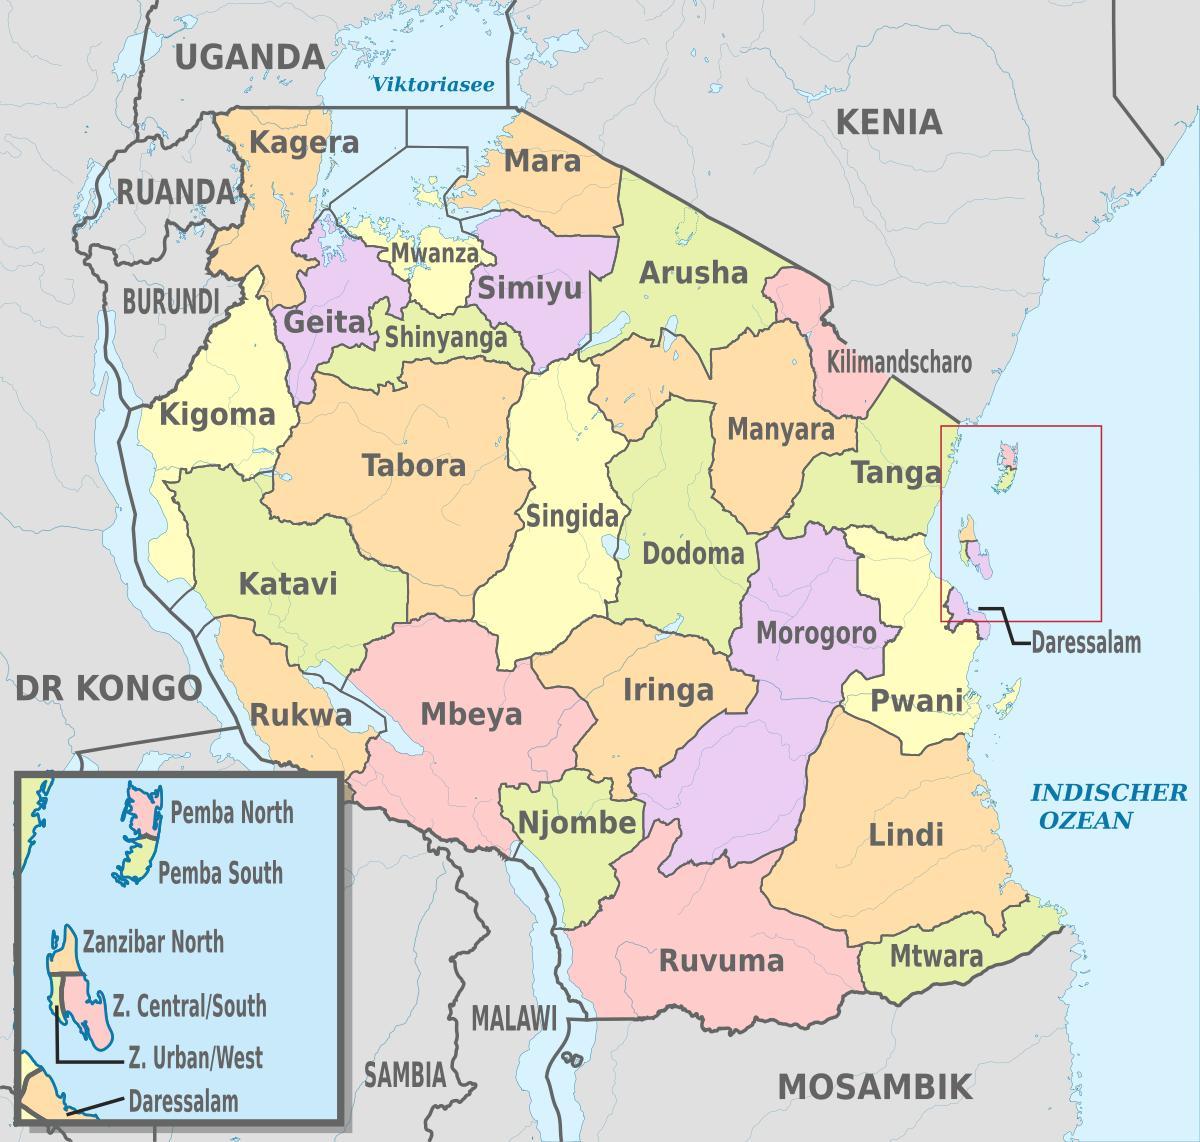 地図を示すタンザニア地区